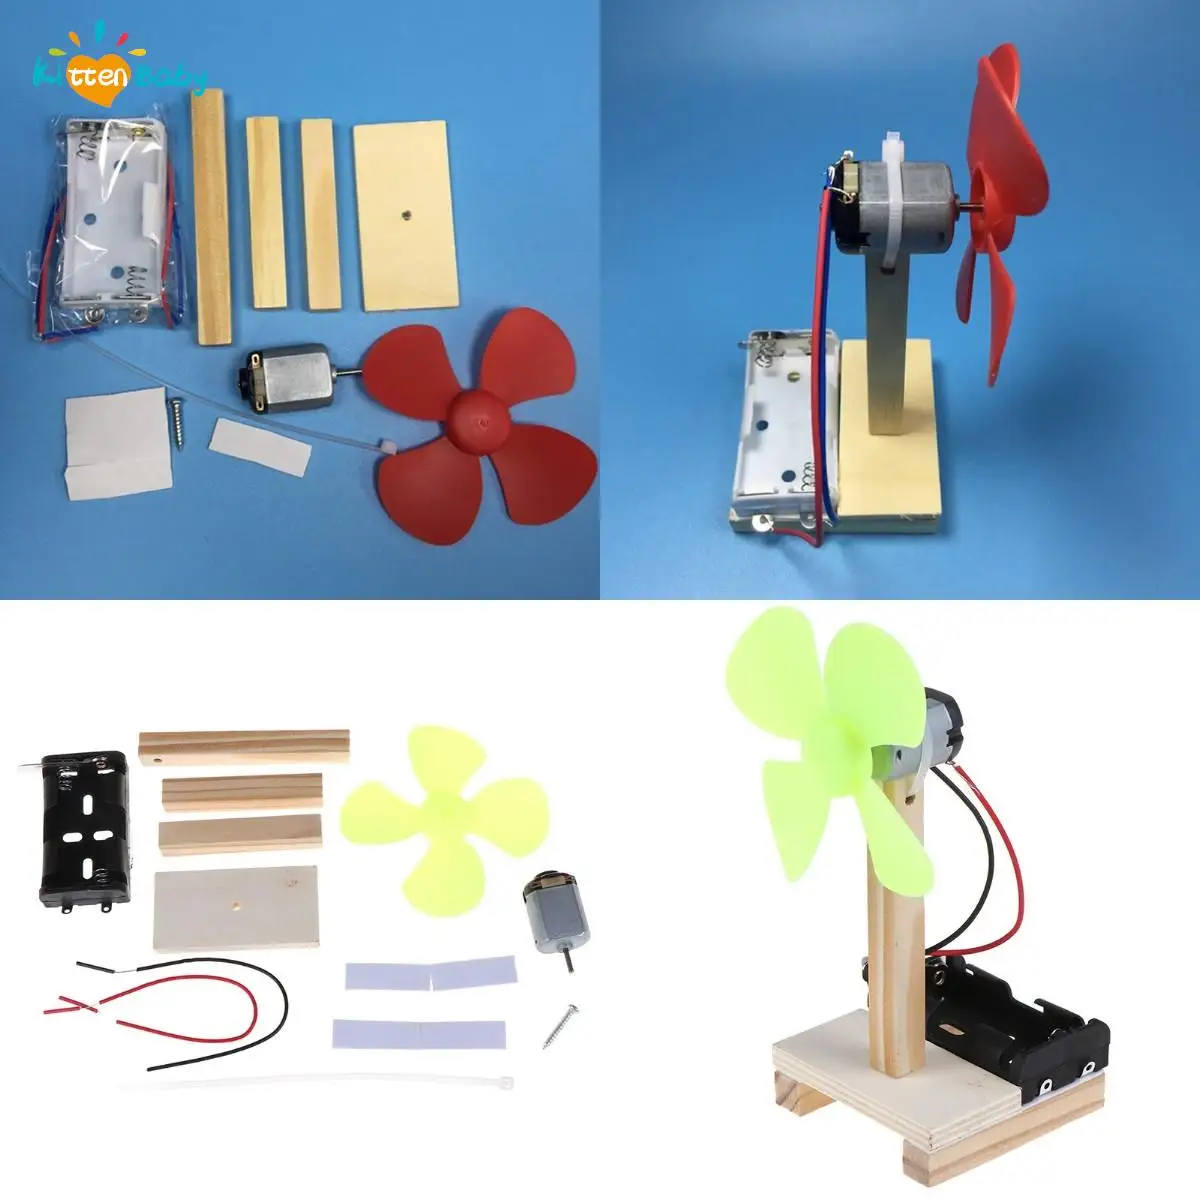 

Детская мини-модель «сделай сам» с веером, игрушка для физики, Электрический эксперимент, обучающая игрушка, учебные пособия, школьные прин...